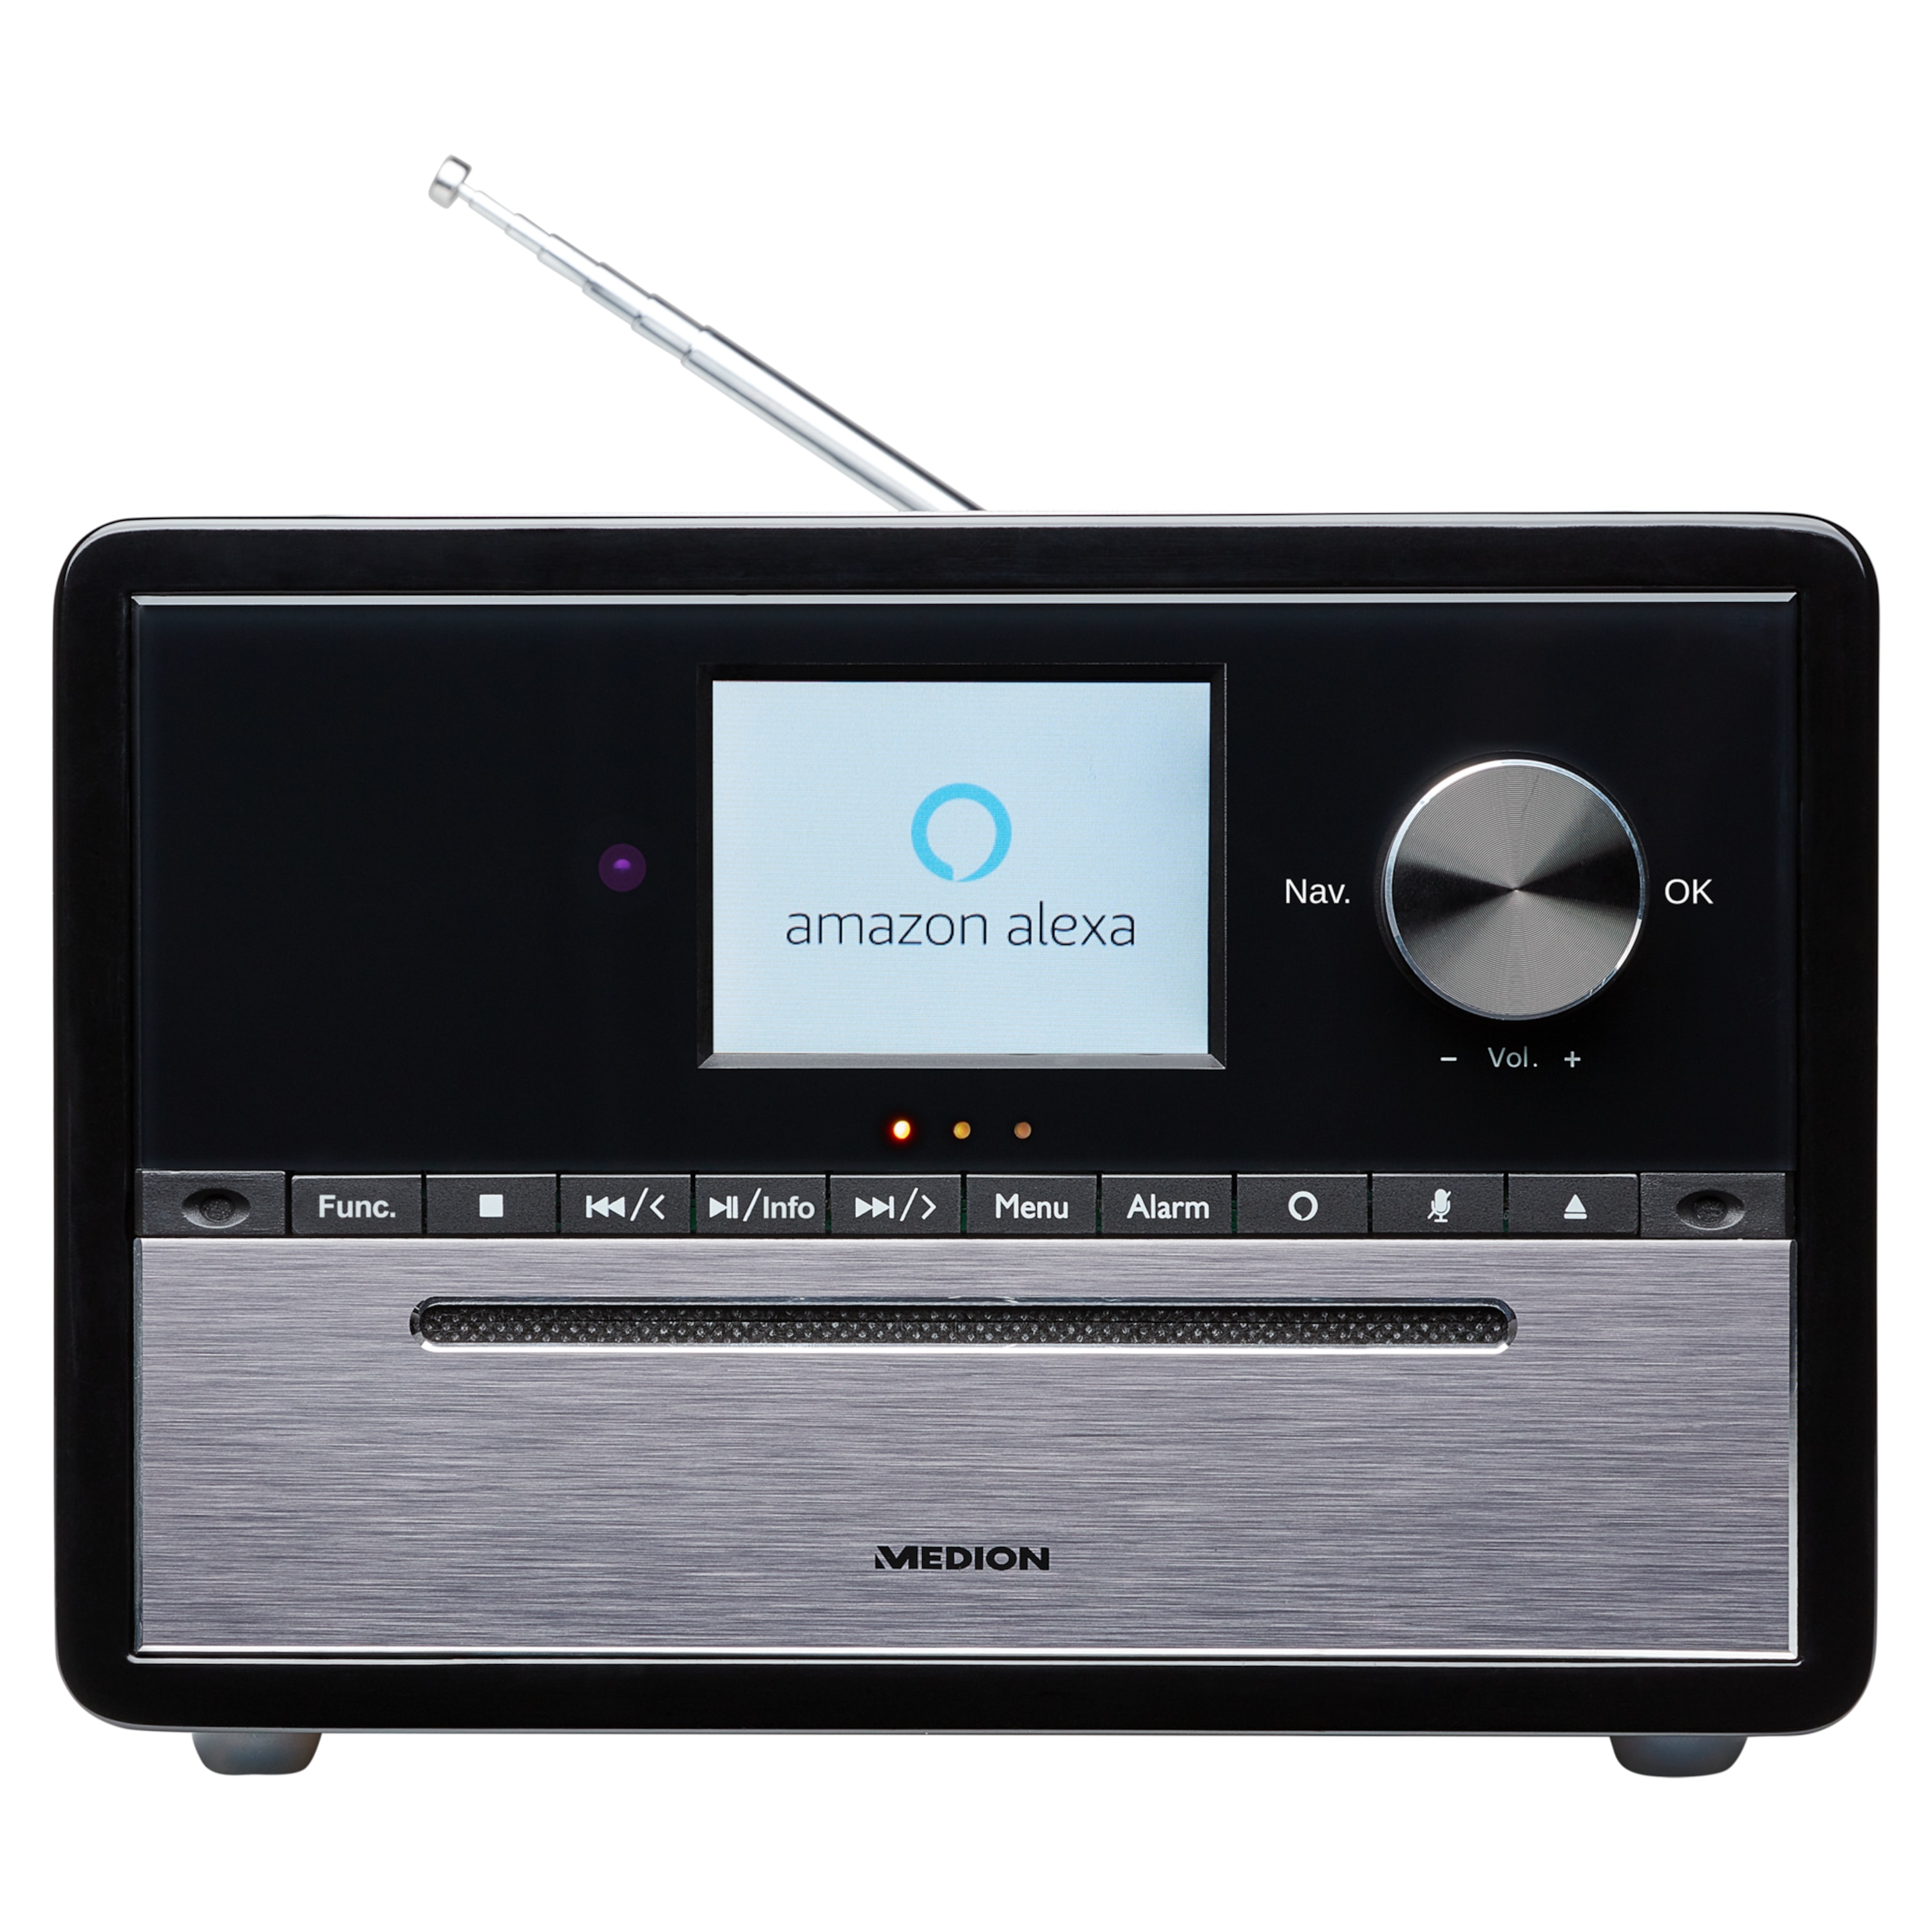 MEDION® LIFE® S64007 All-in-One Audio-System mit Amazon Alexa, 7,1 cm (2,8") TFT-Farbdisplay, DAB+/PLL-UKW, WLAN, Party Mode, EQ für Bass- und Höheneinstellung, Musikwiedergabe über Bluetooth®, 15 W RMS